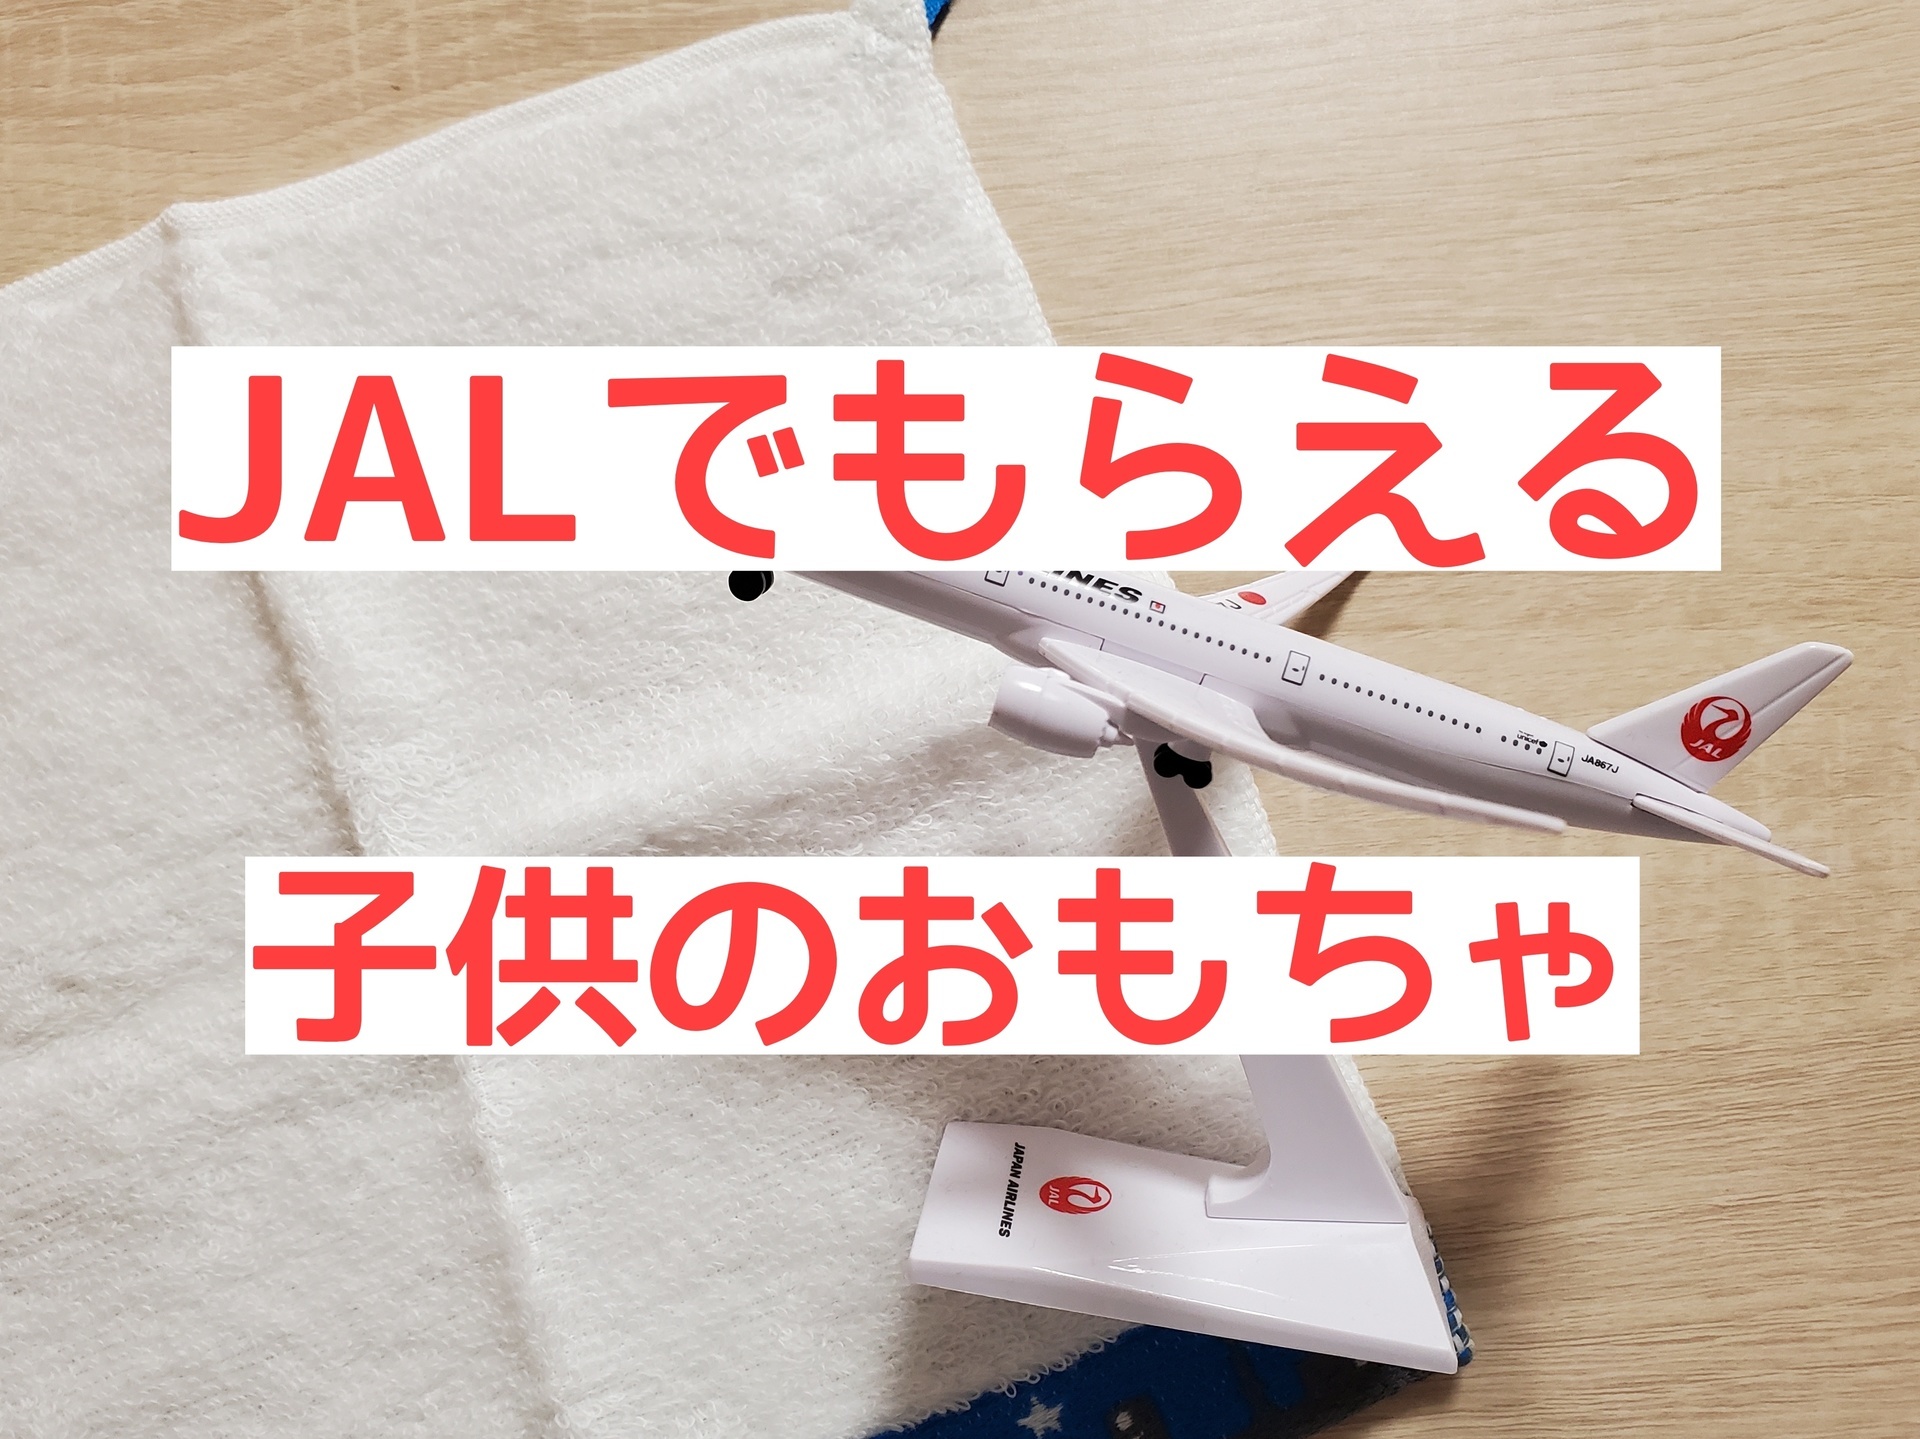 JAL ANAアメニティ 飛行機 模型 プラモデルとパズルセット 非売品